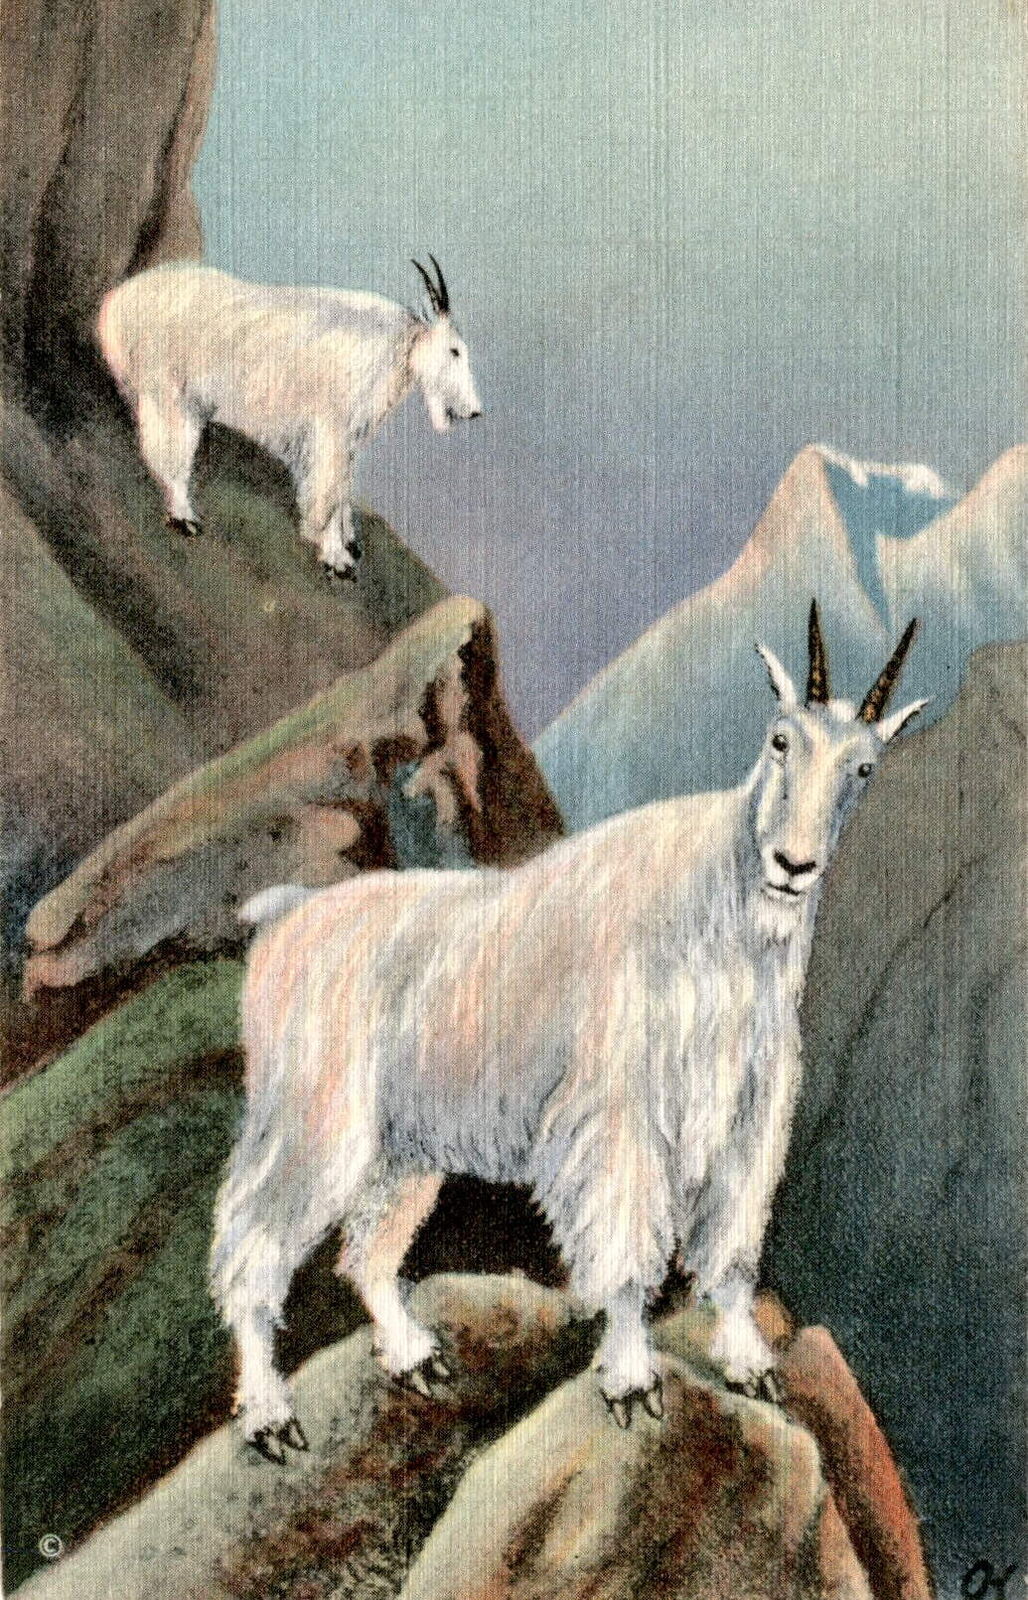 Alaskan, white mountain sheep, Dalls, Curt Teich & Co., Inc., Chicago,  Postcard